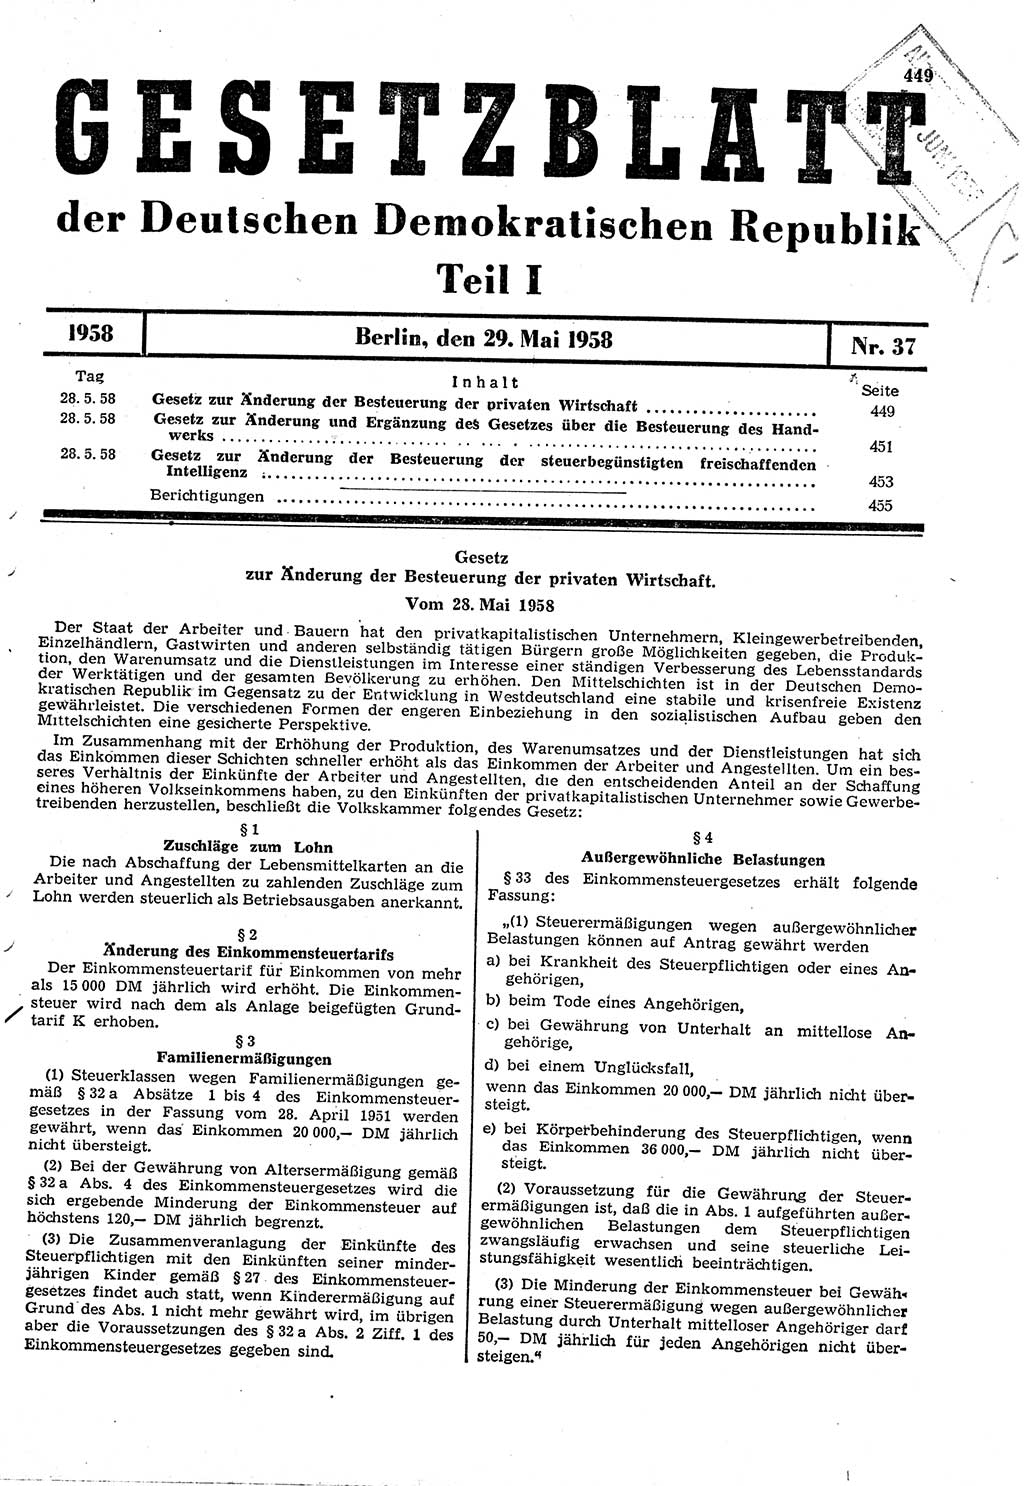 Gesetzblatt (GBl.) der Deutschen Demokratischen Republik (DDR) Teil Ⅰ 1958, Seite 449 (GBl. DDR Ⅰ 1958, S. 449)